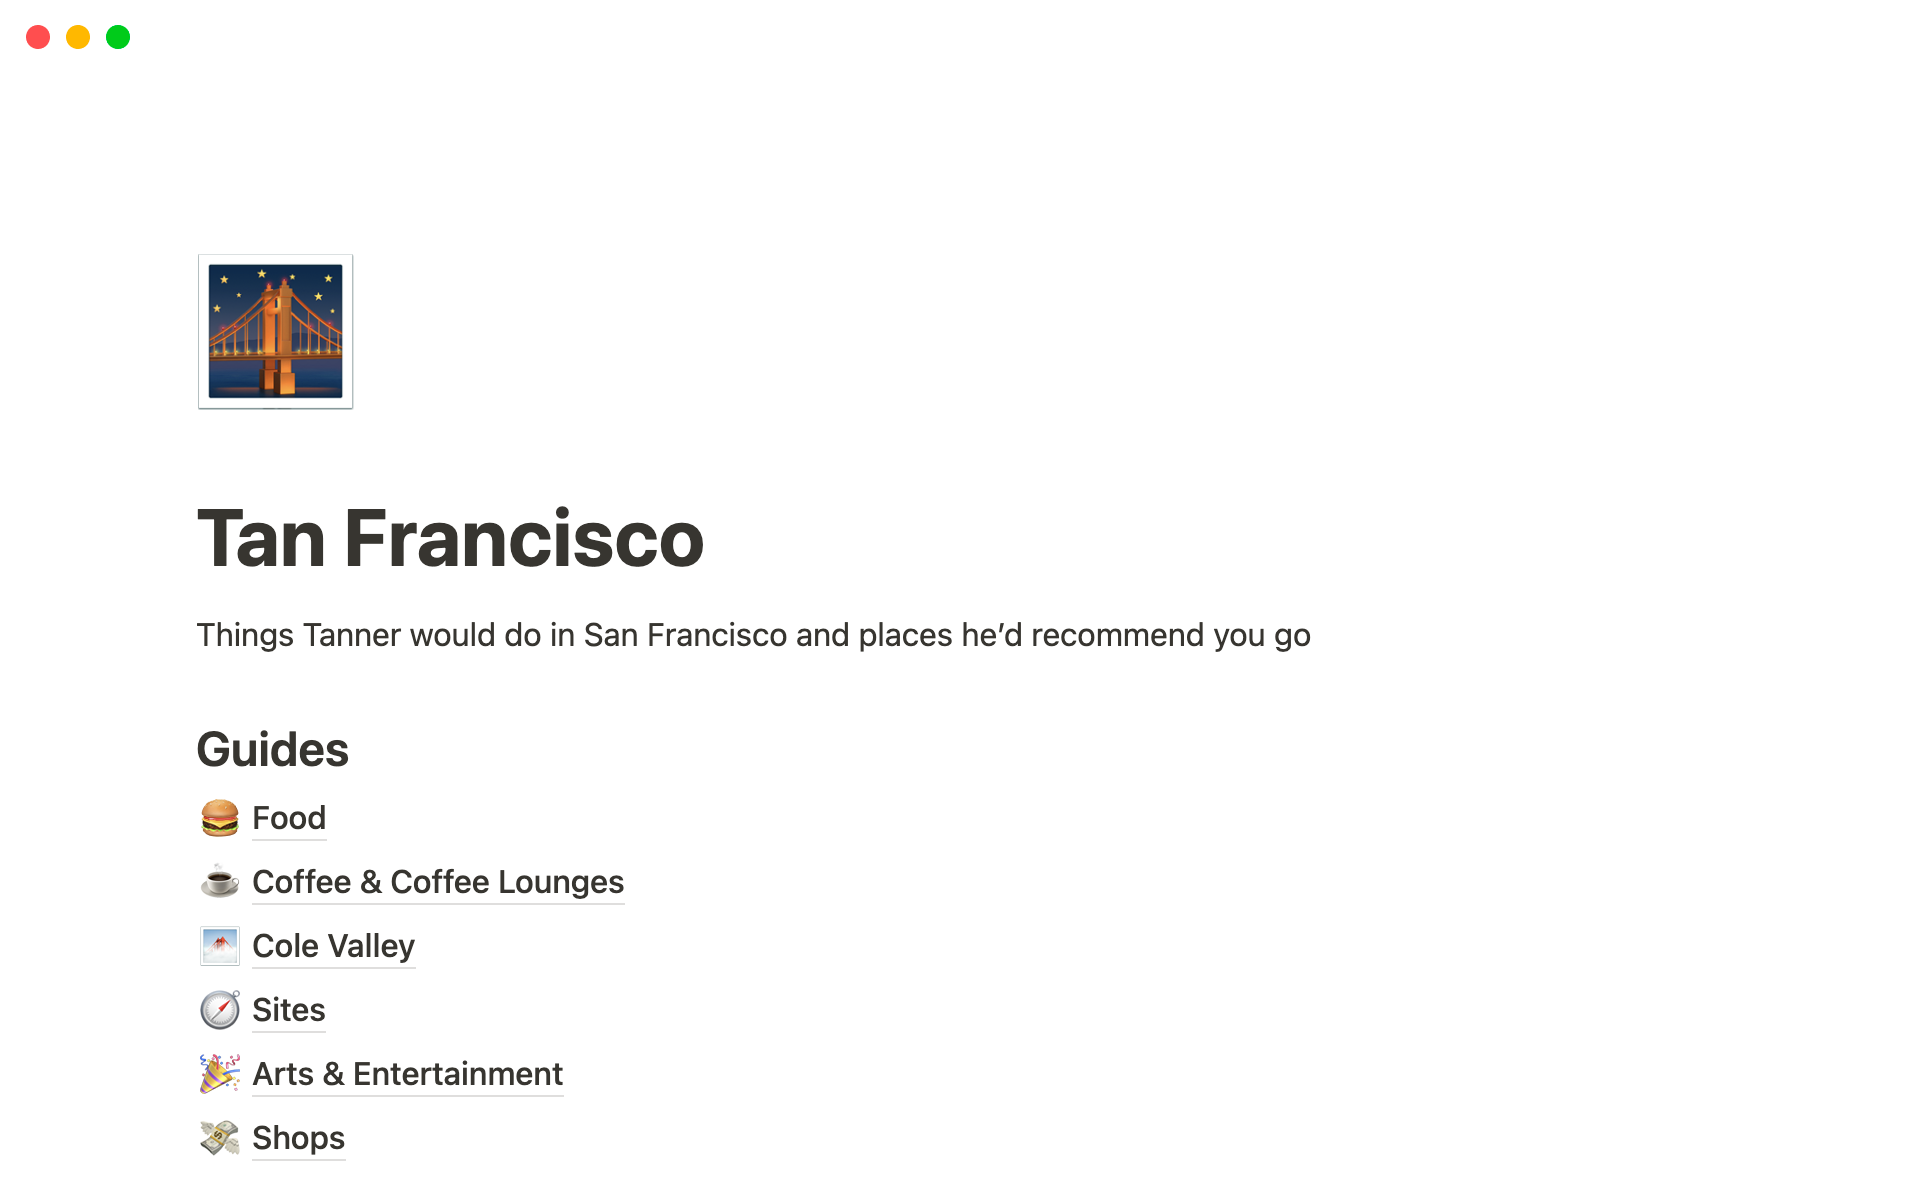 Vista previa de una plantilla para Tan Francisco — Tanner's Guide To San Francisco